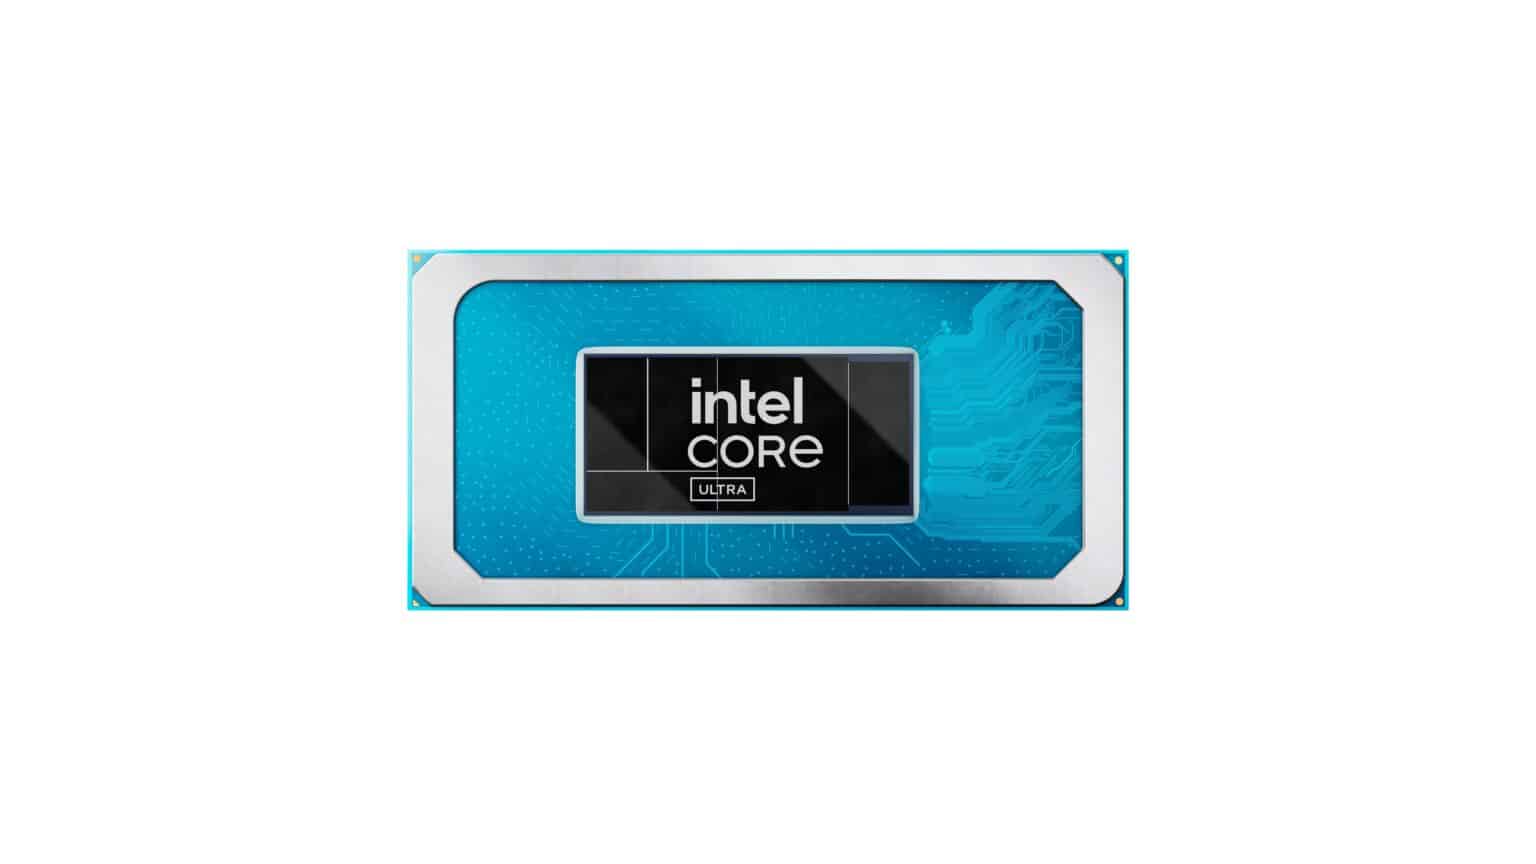 Intel-Core-Ultra-3